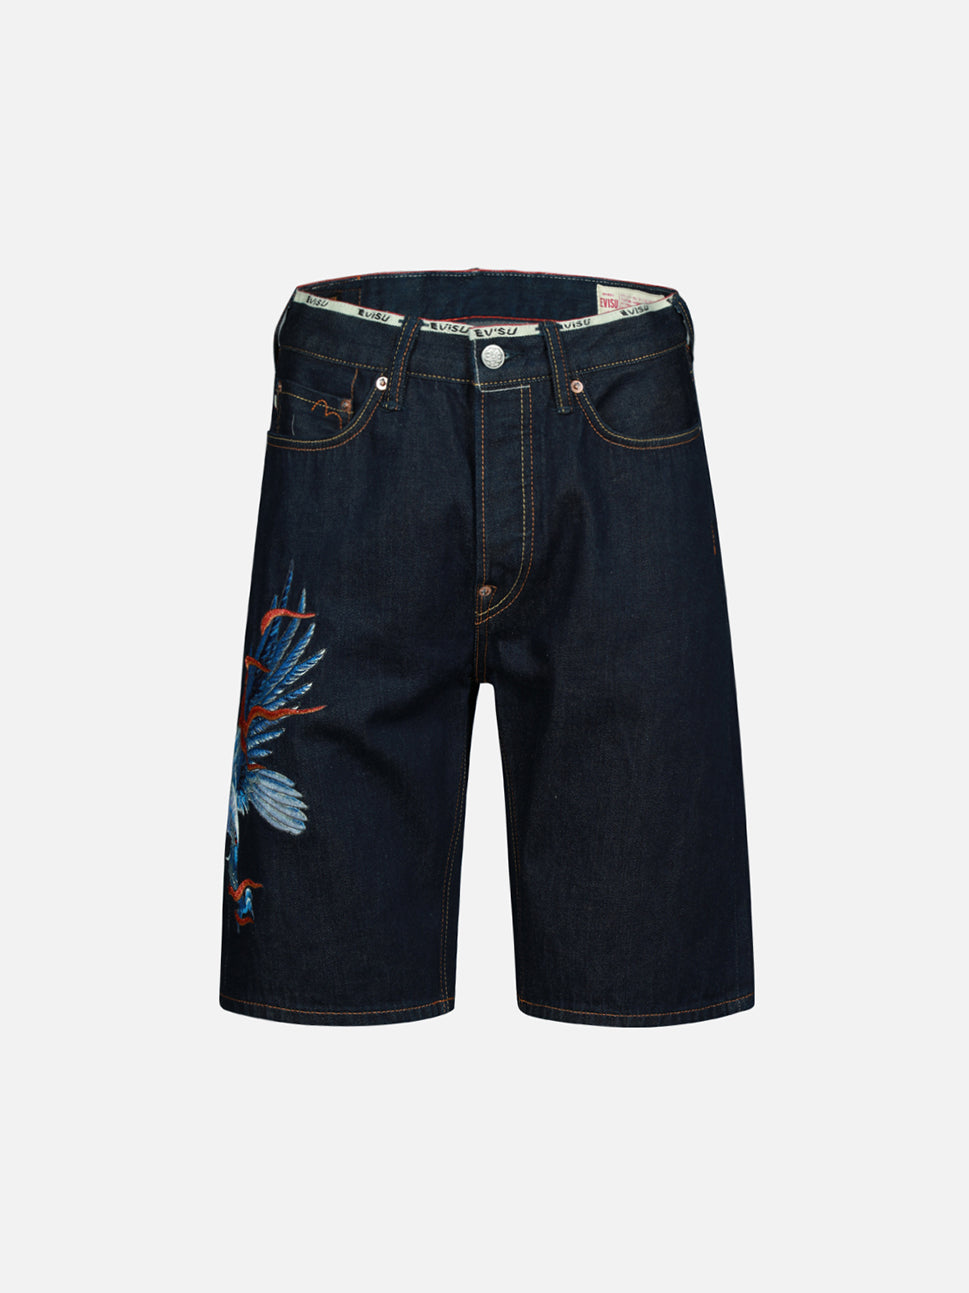 Evisu Indigo Seagull & Eagle Embroidery Short Jeans